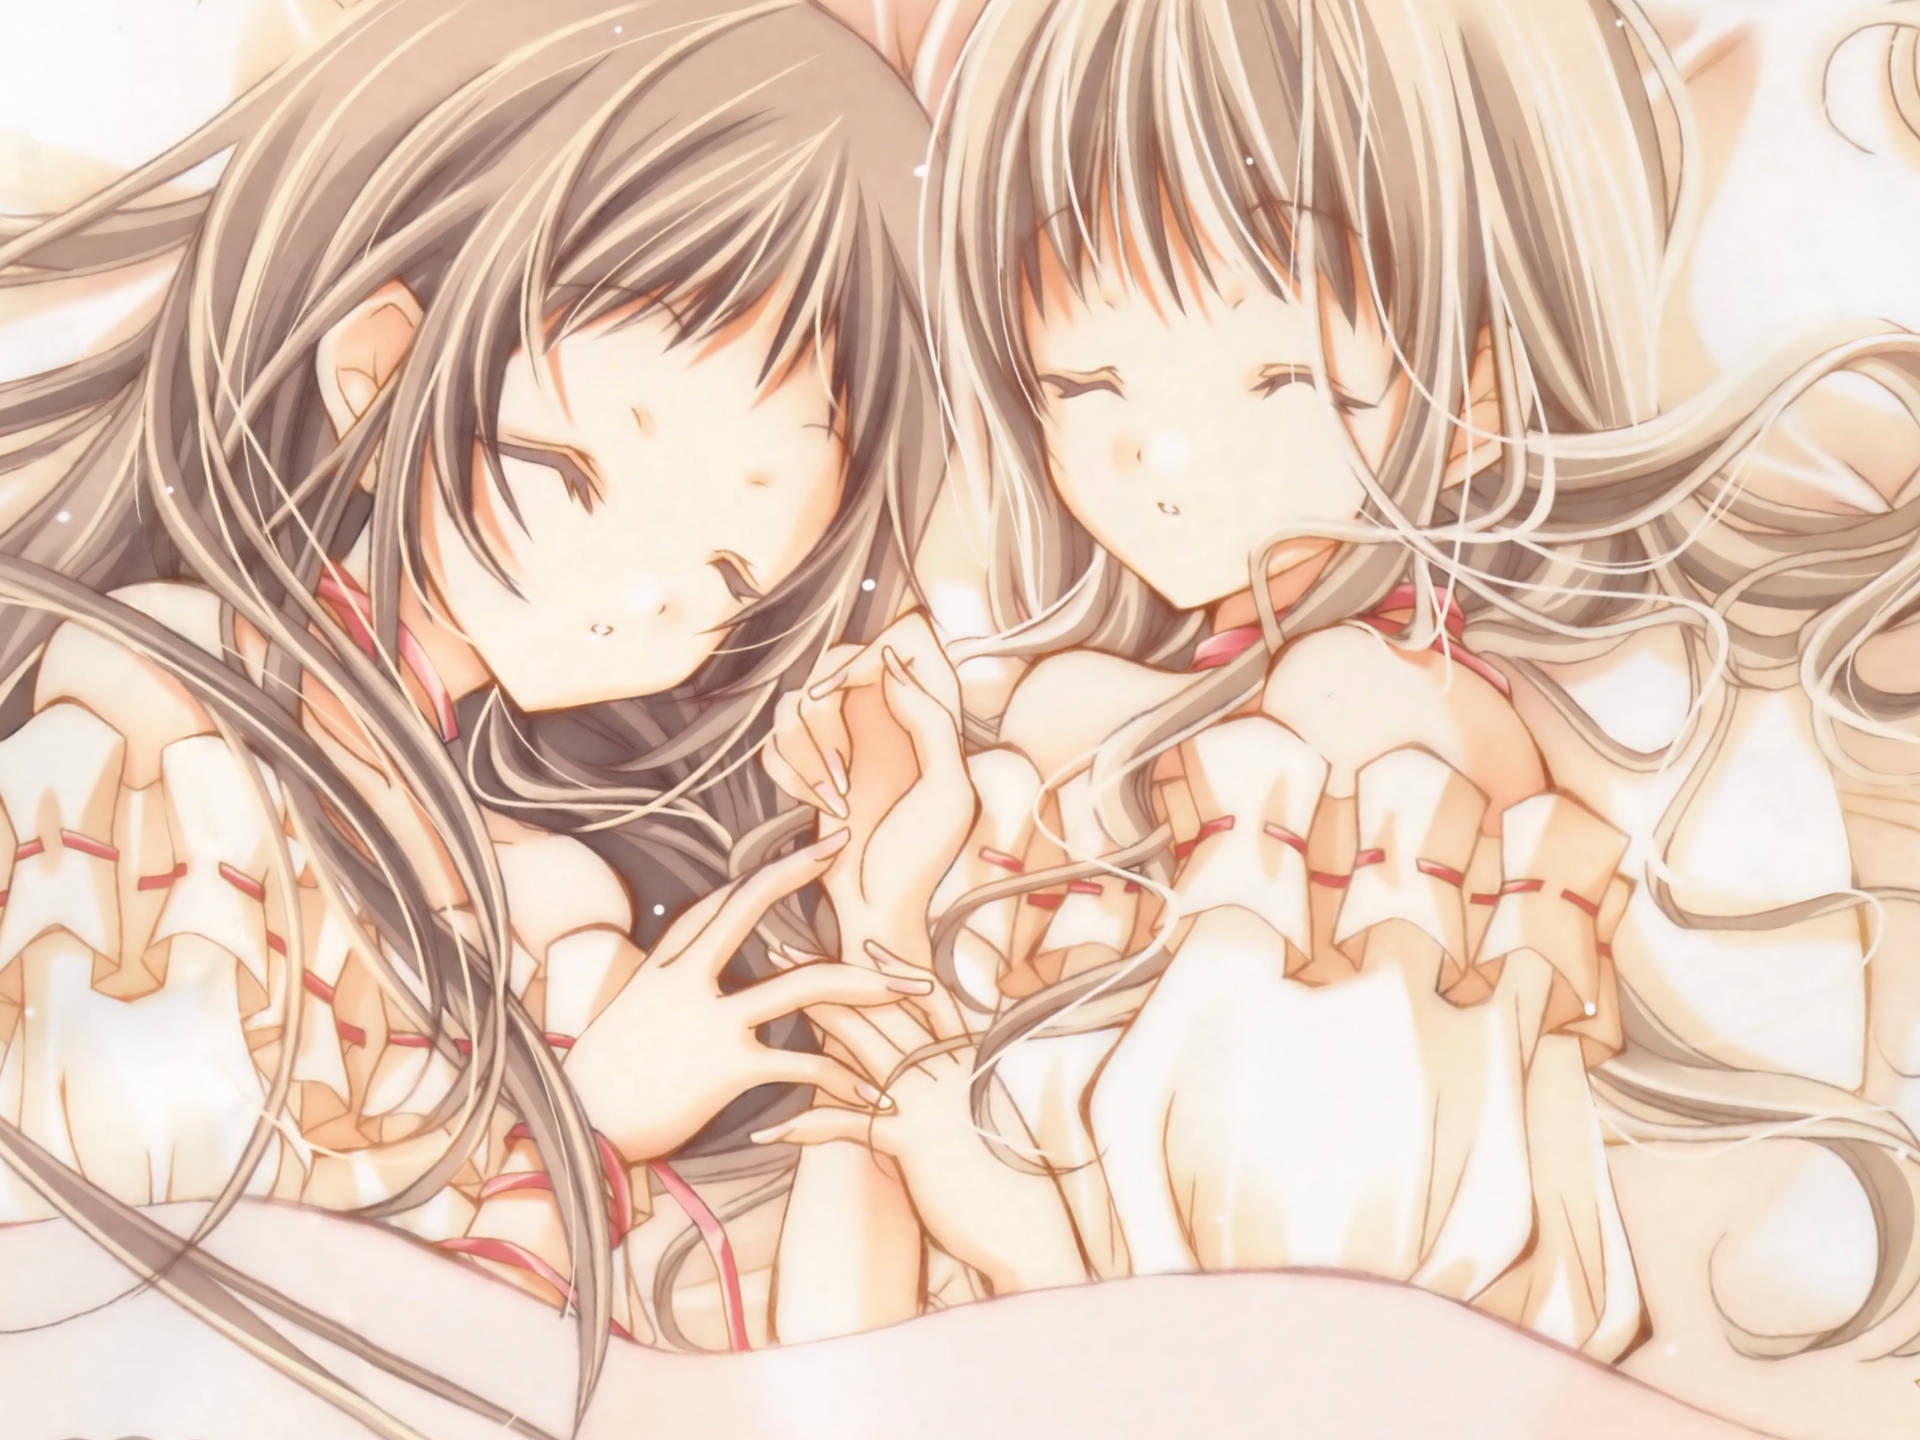 Anime Lesbian Maki And Hikari